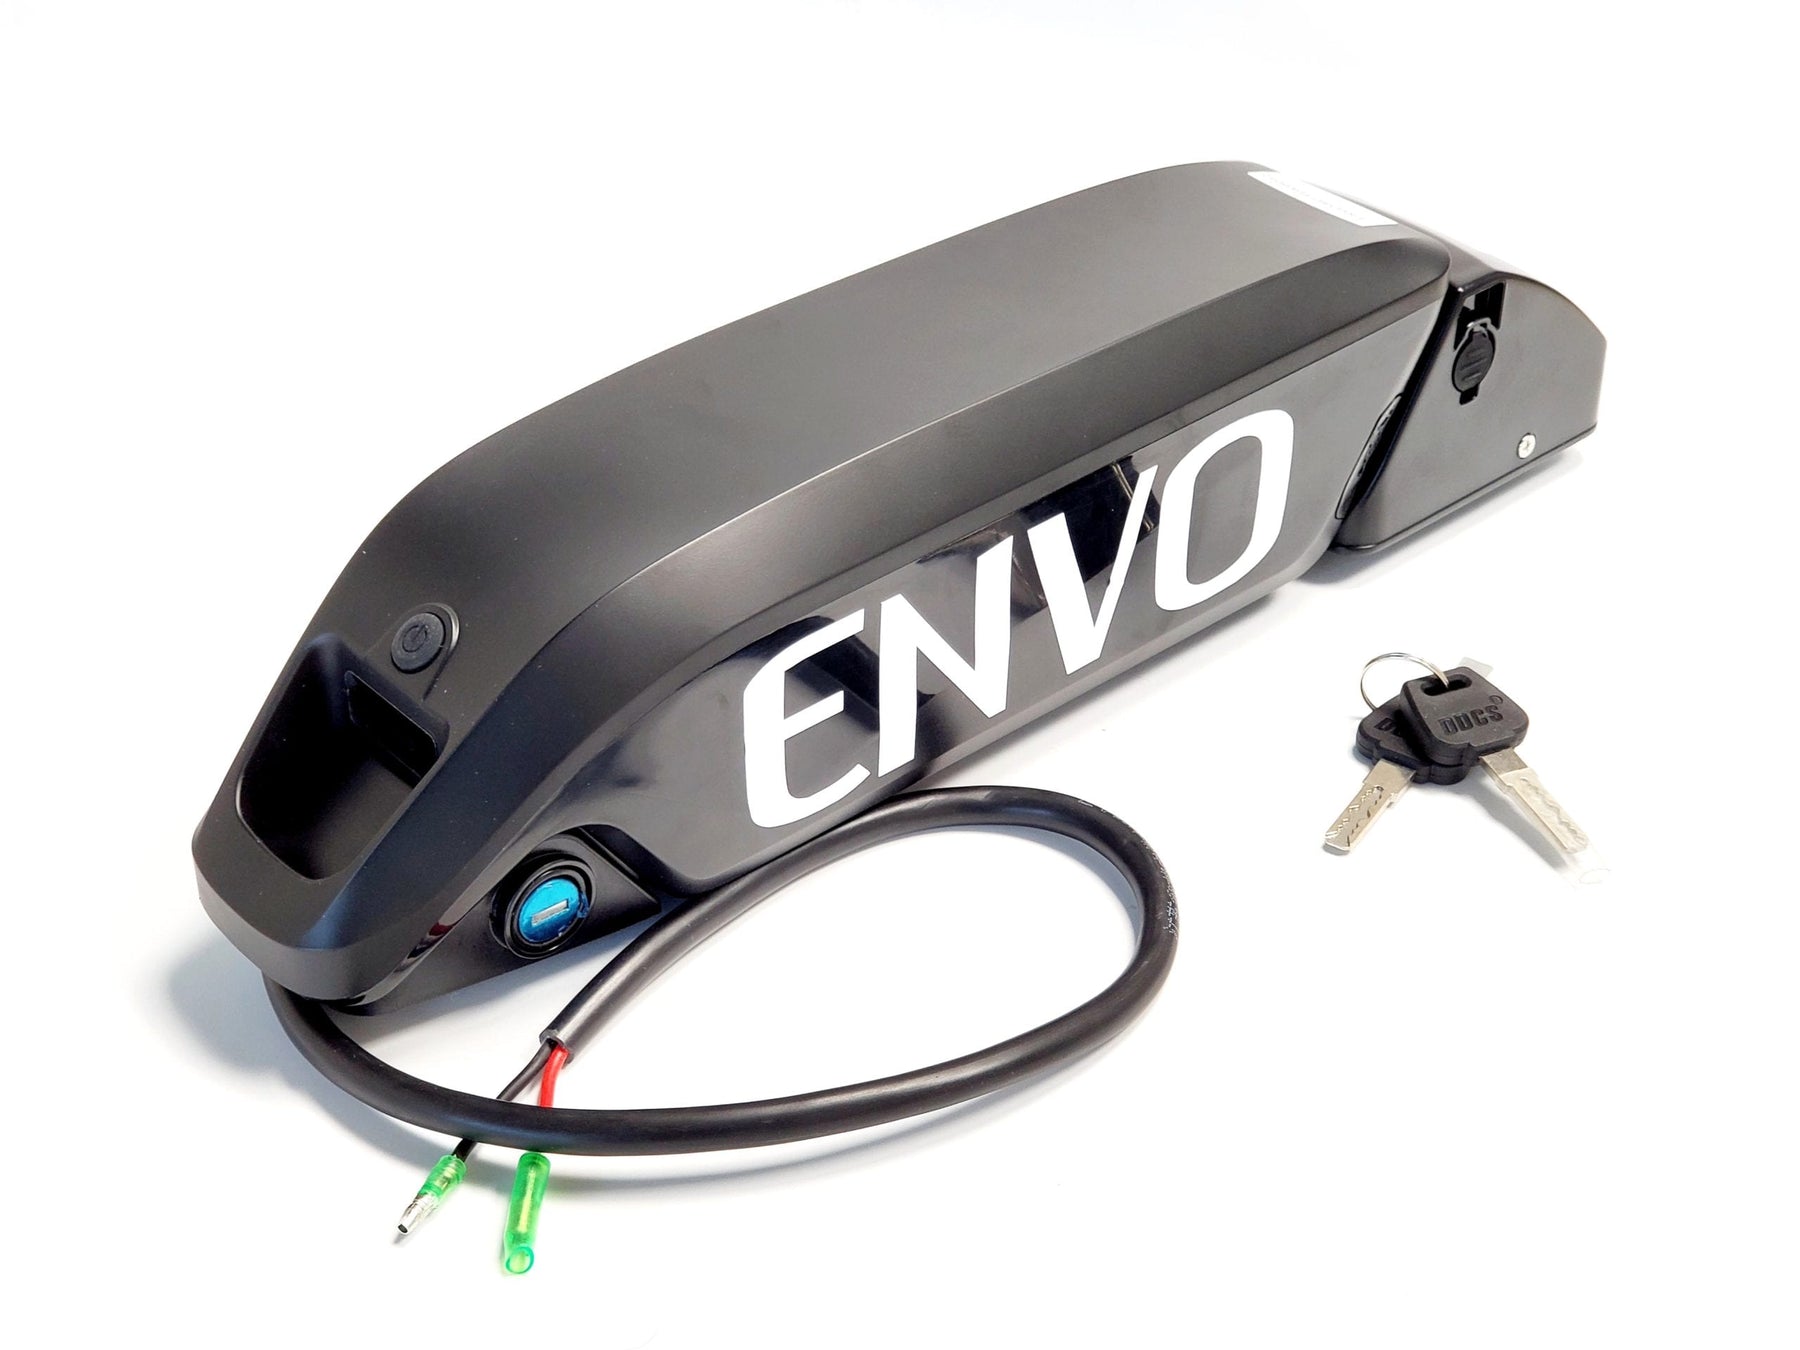 ENVO Batterie 36V 12.8Ah pour Vélo Electrique